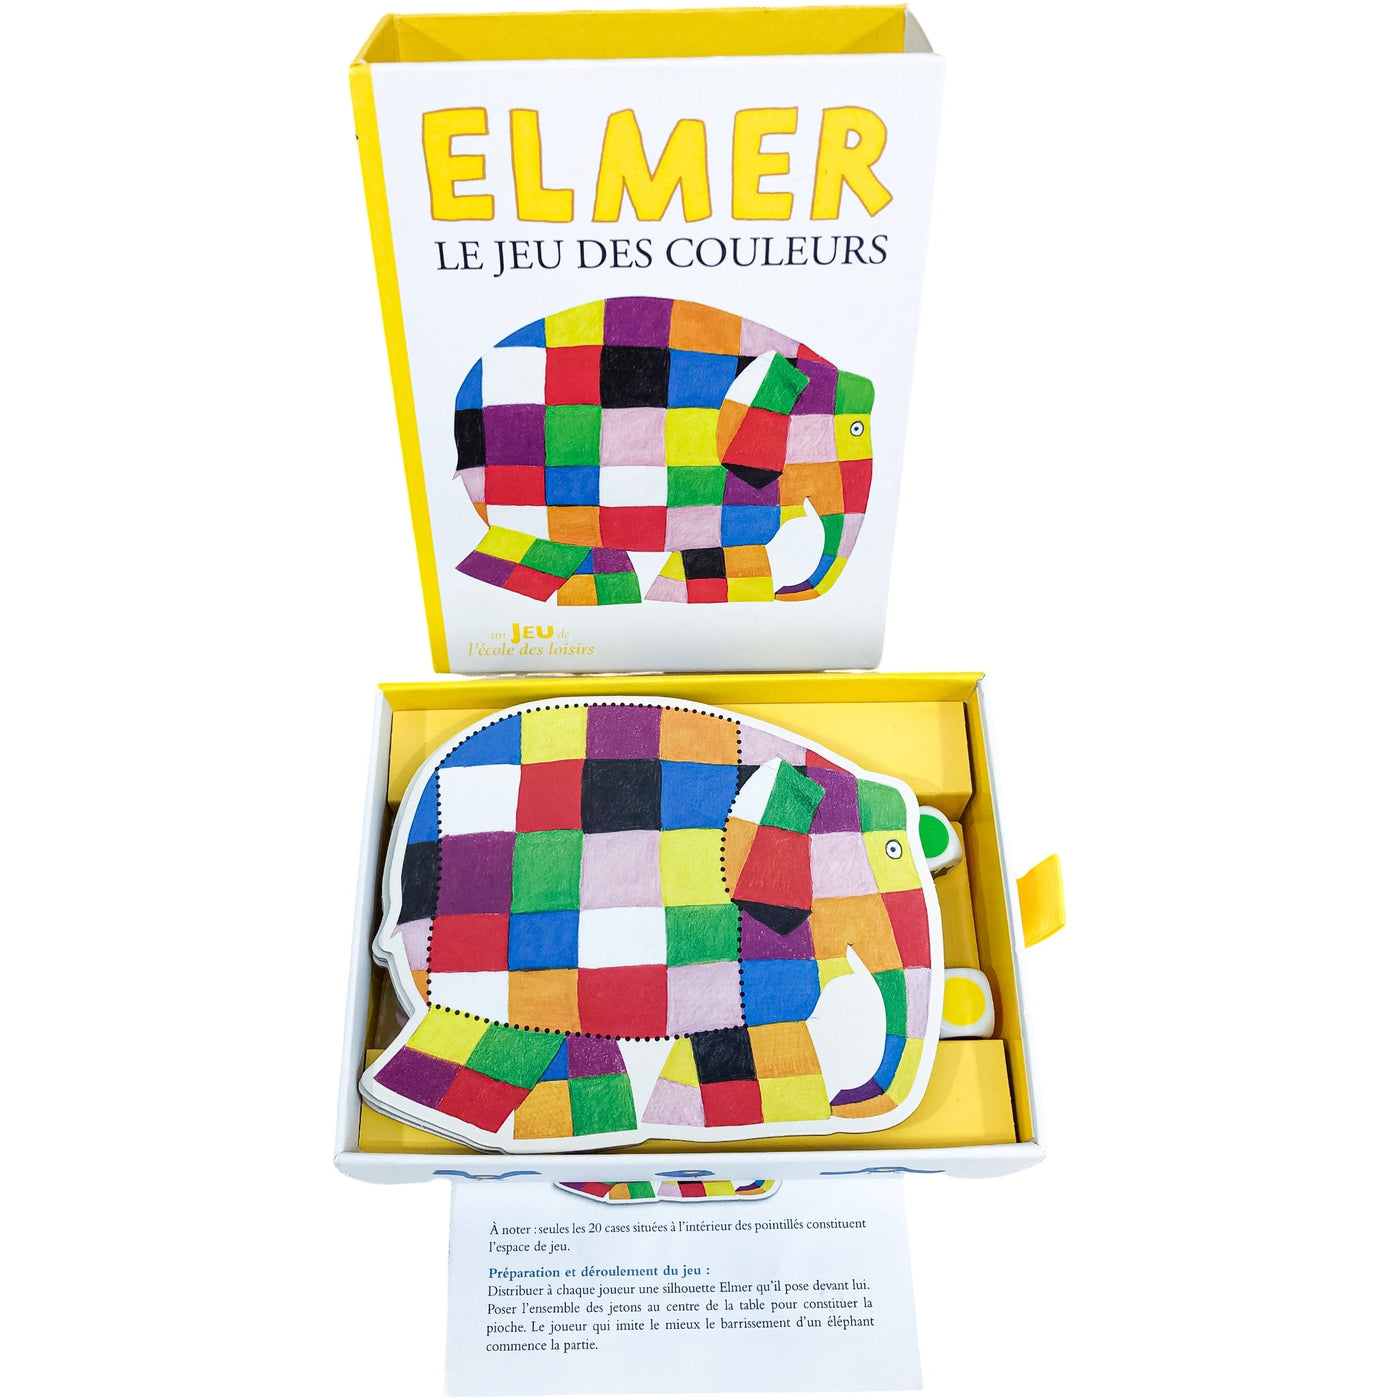 Jeu de plateau "Elmer Le jeu des couleurs" de seconde main en bois et carton pour enfant à partir de 3 ans - Vue 2